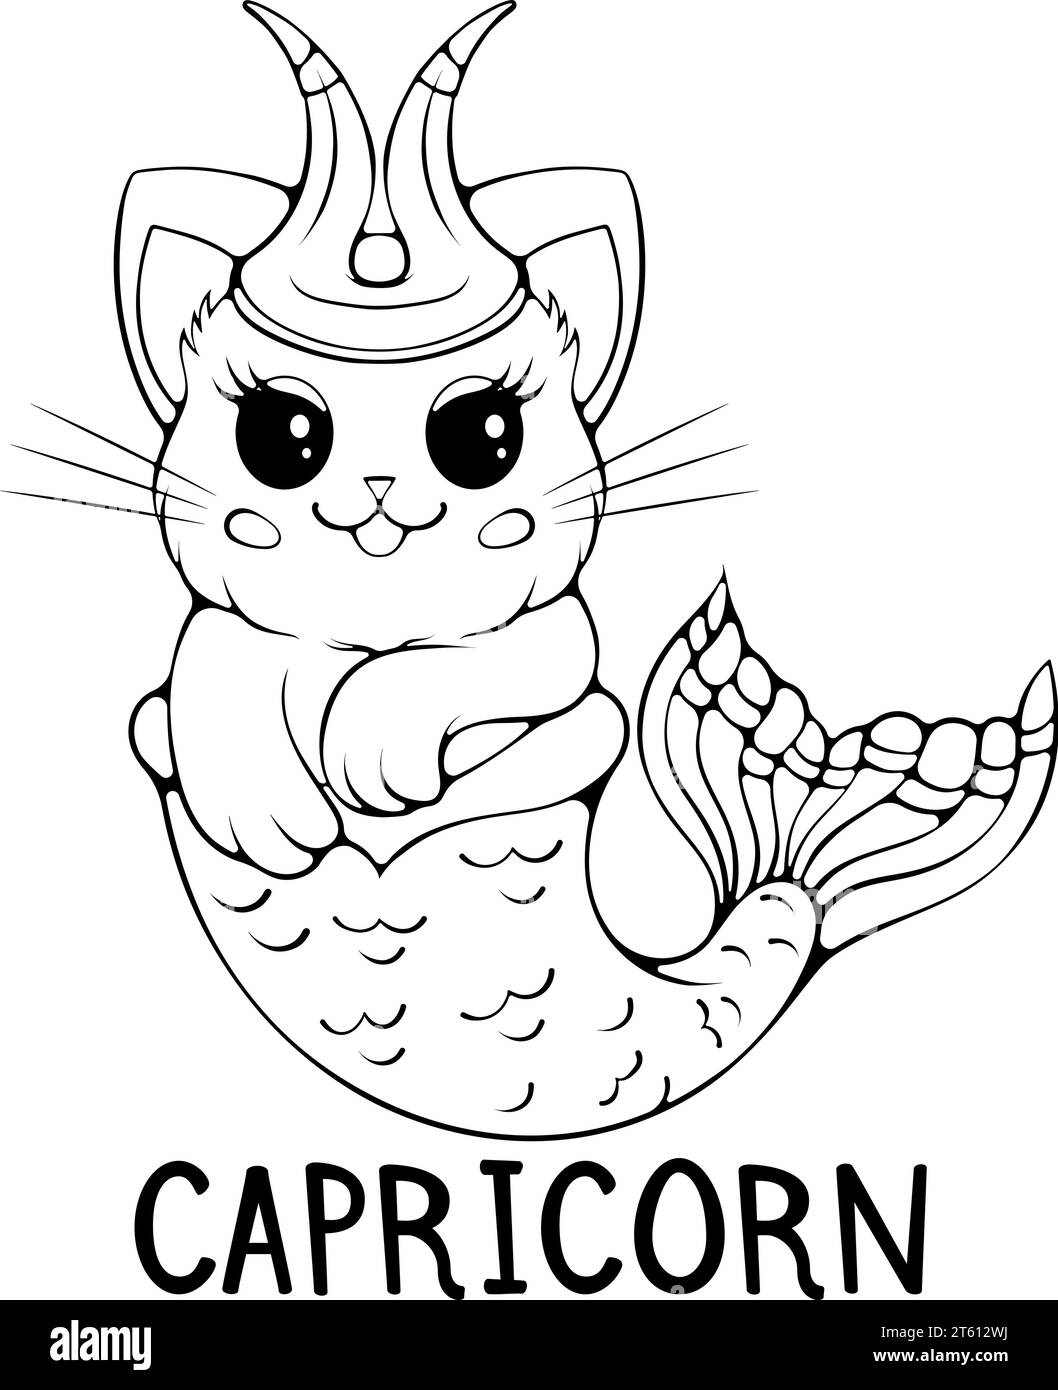 Capricorn cute cartoon zodiac cat Stock Vector